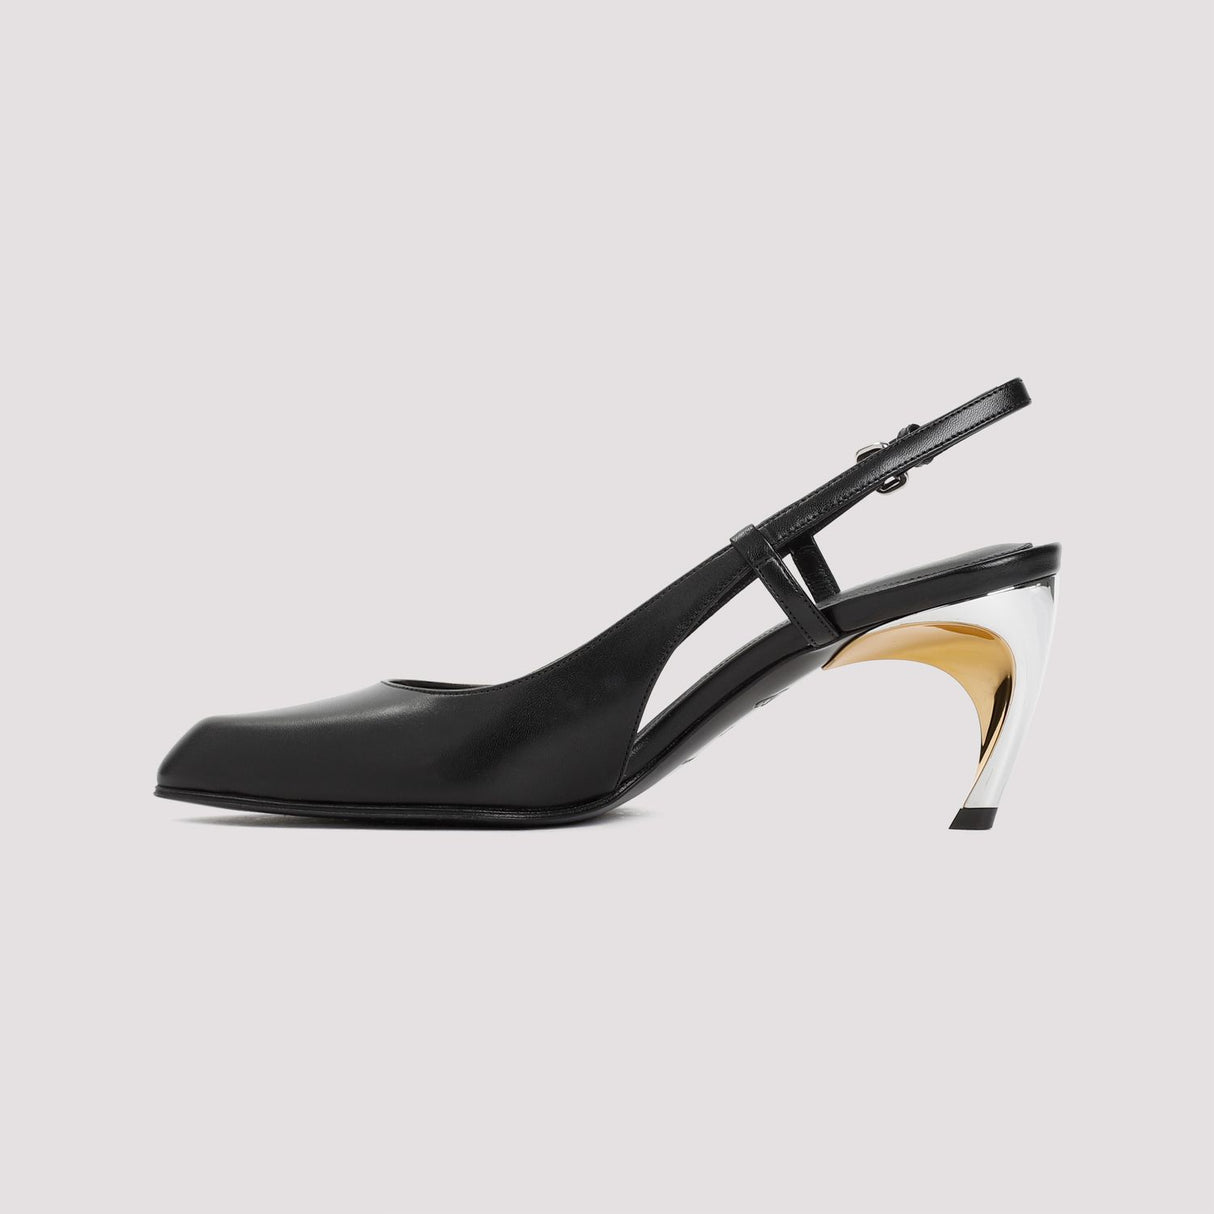 Đôi giày cao gót da đen nữ - Chiều cao gót 7.5cm